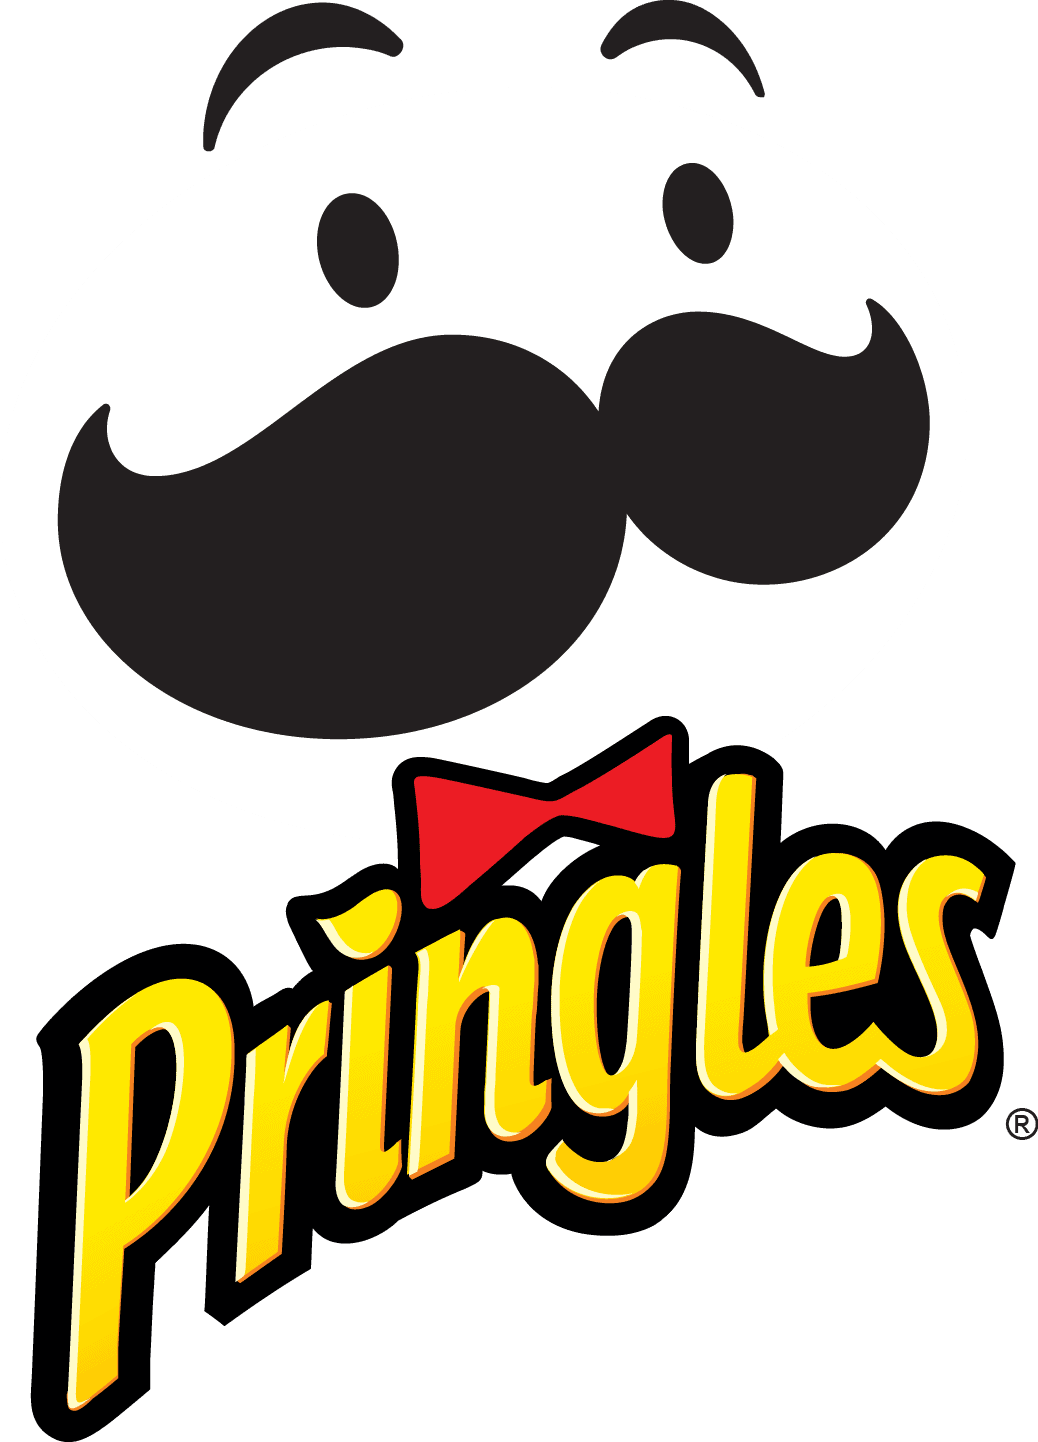 Pringles Logo PNG File | PNG Mart